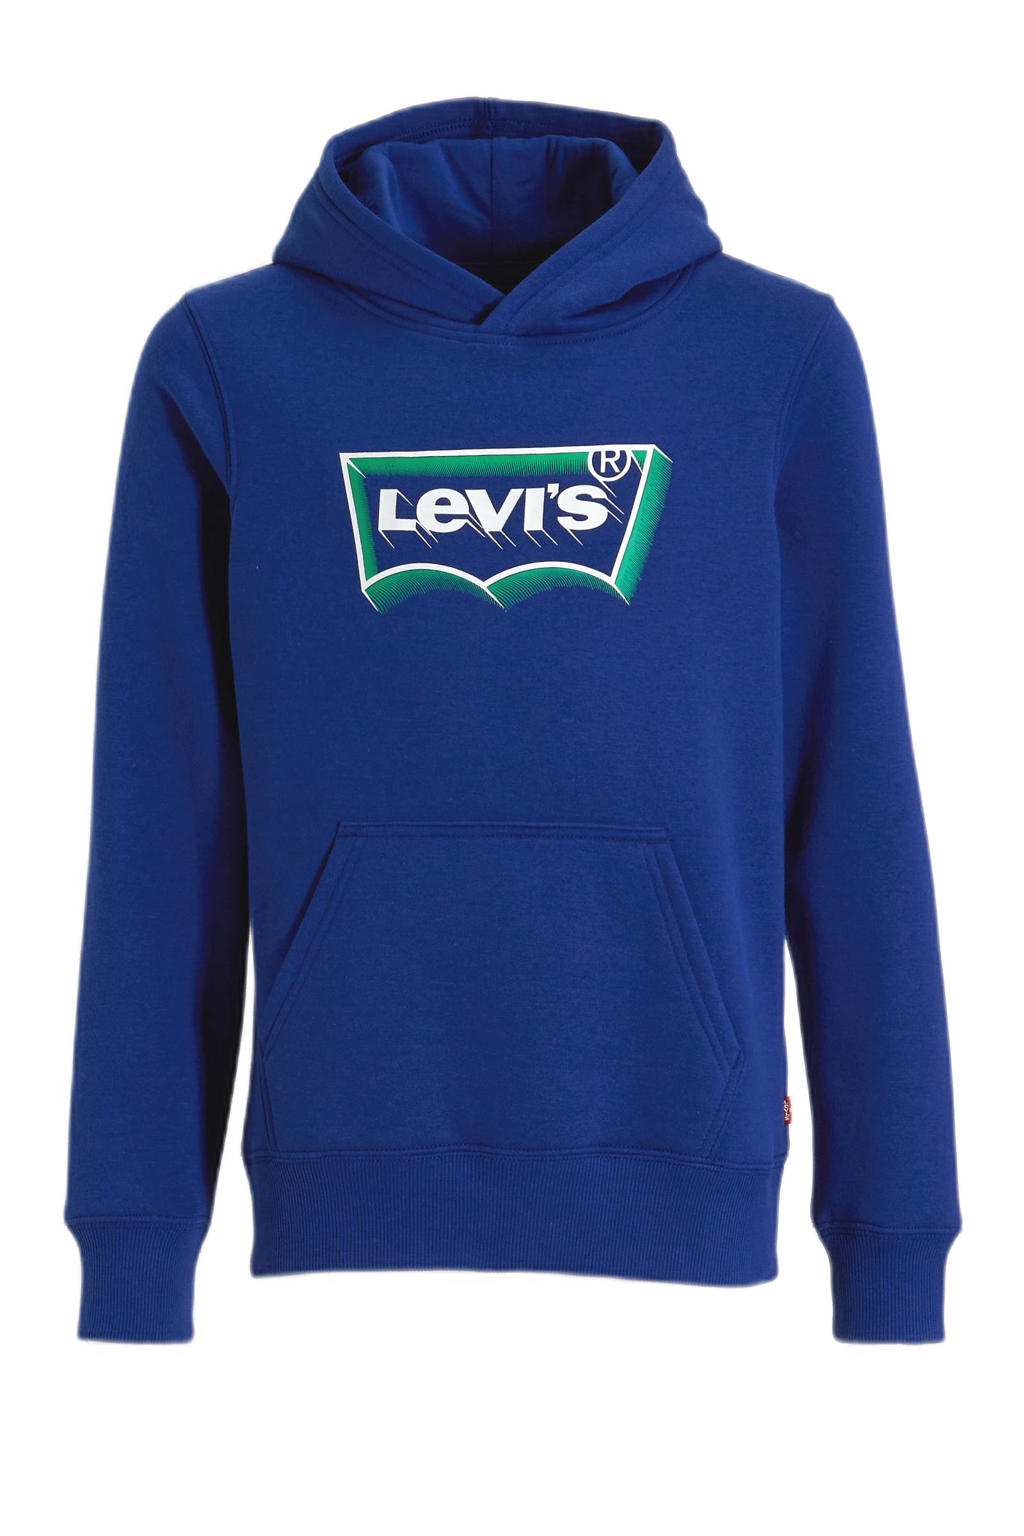 Blauwe jongens Levi's Kids hoodie Batwing van duurzame sweatstof met logo dessin, lange mouwen en capuchon